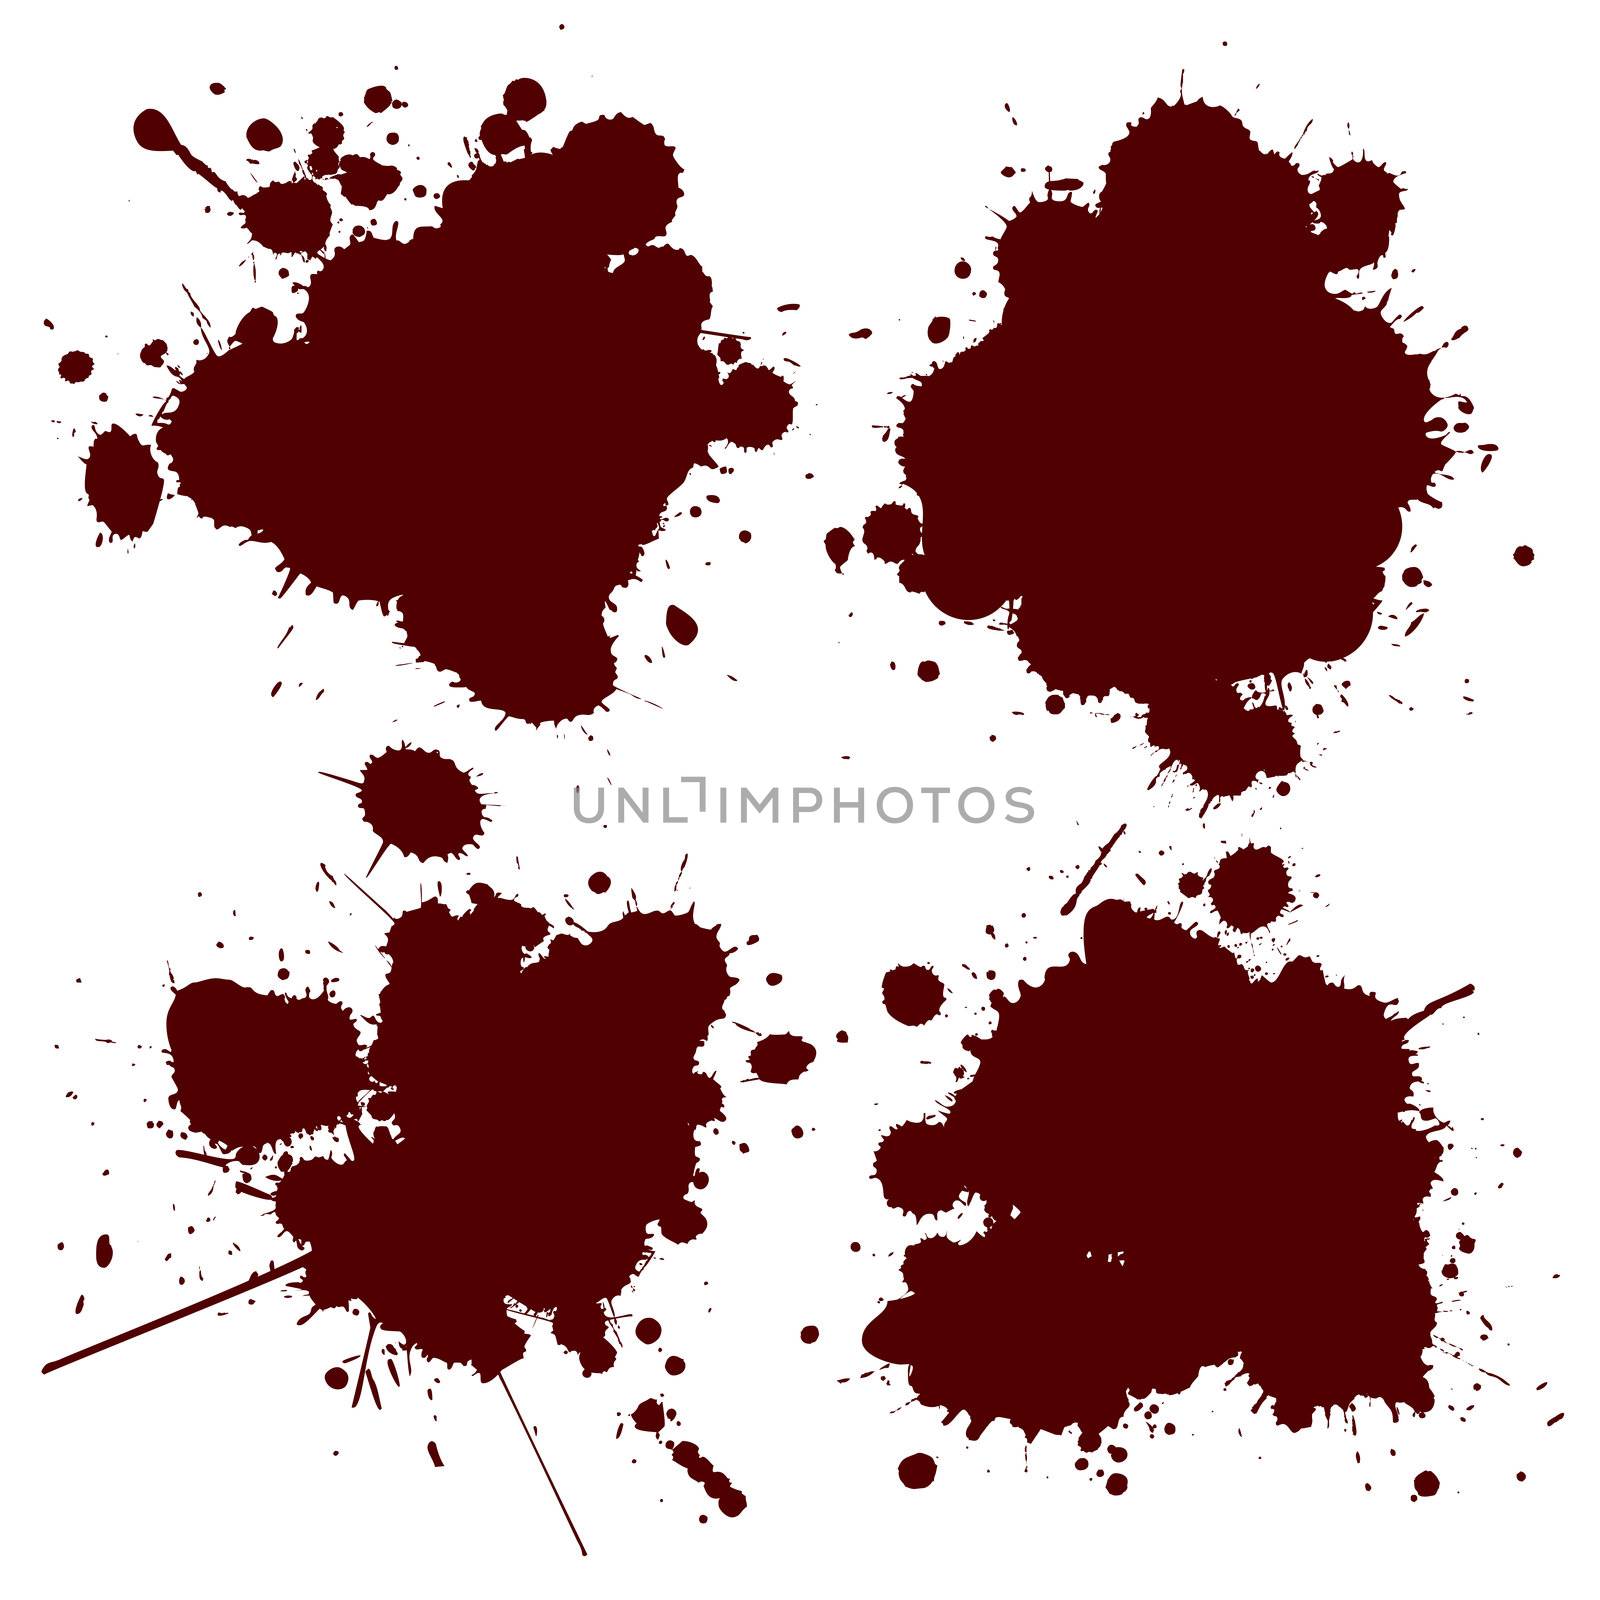 Blood splat by Lirch